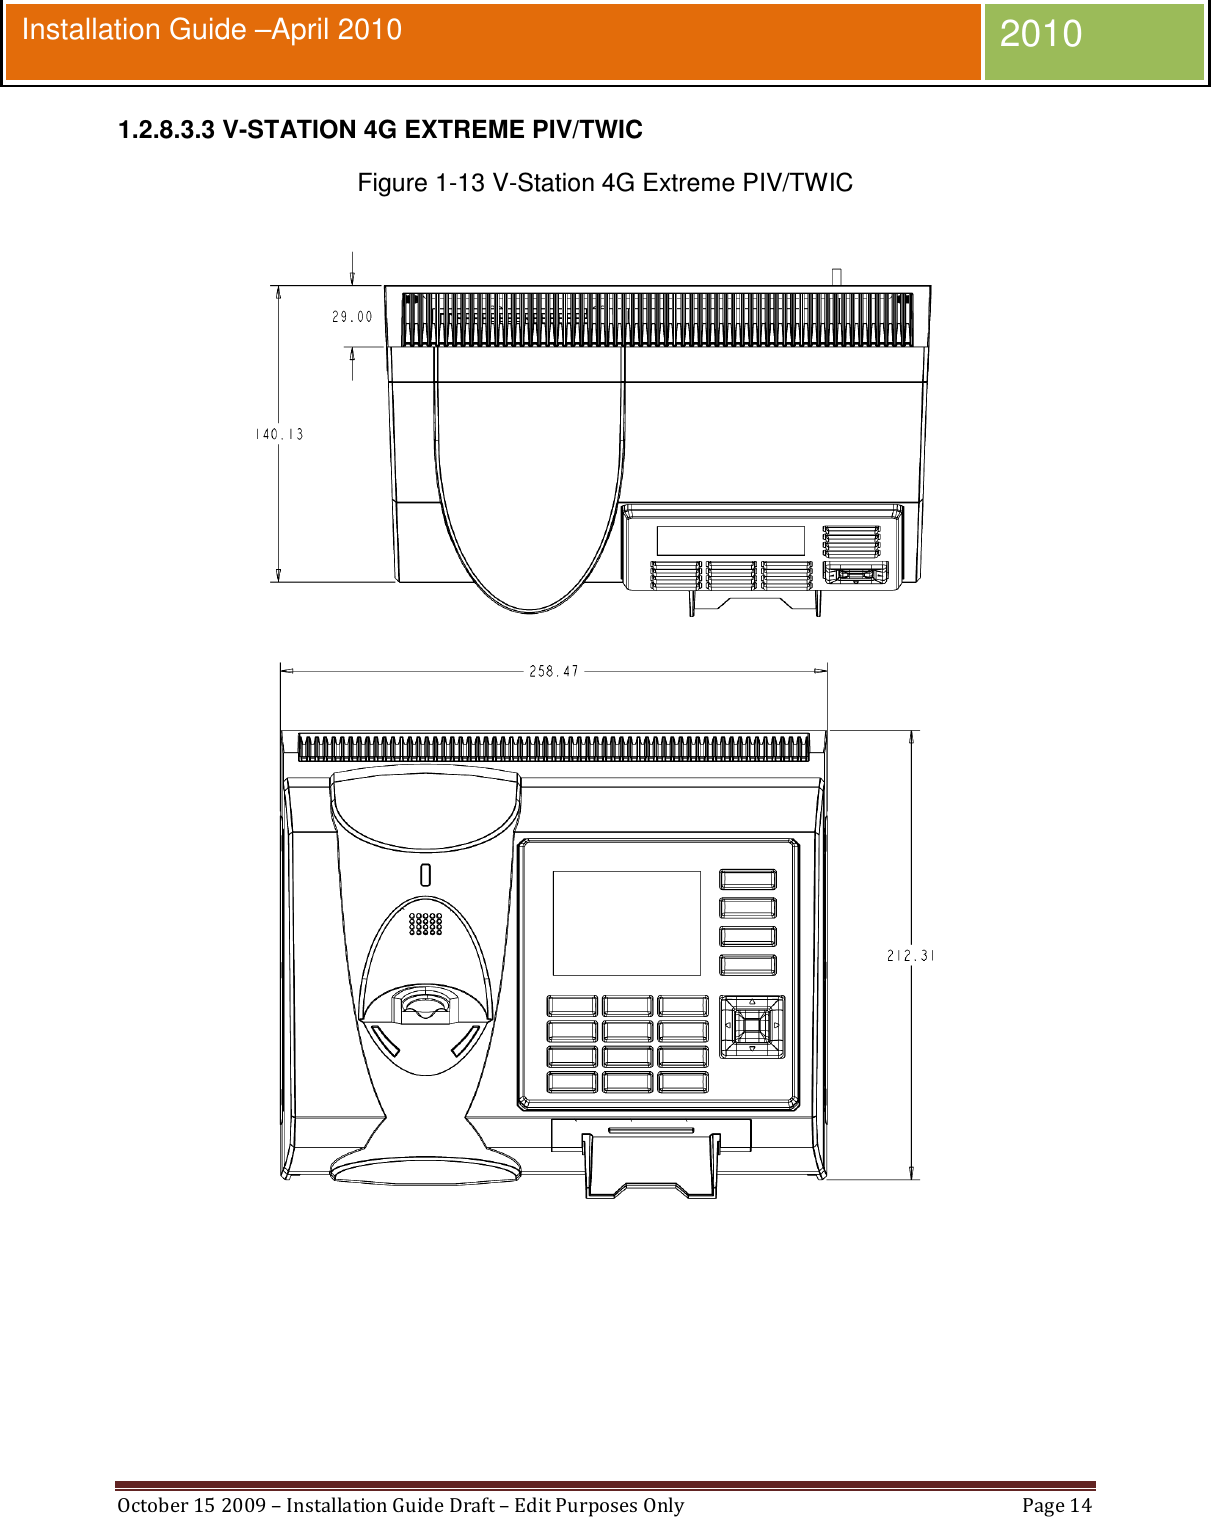  October 15 2009 – Installation Guide Draft – Edit Purposes Only  Page 14  Installation Guide –April 2010 2010 1.2.8.3.3 V-STATION 4G EXTREME PIV/TWIC Figure 1-13 V-Station 4G Extreme PIV/TWIC   